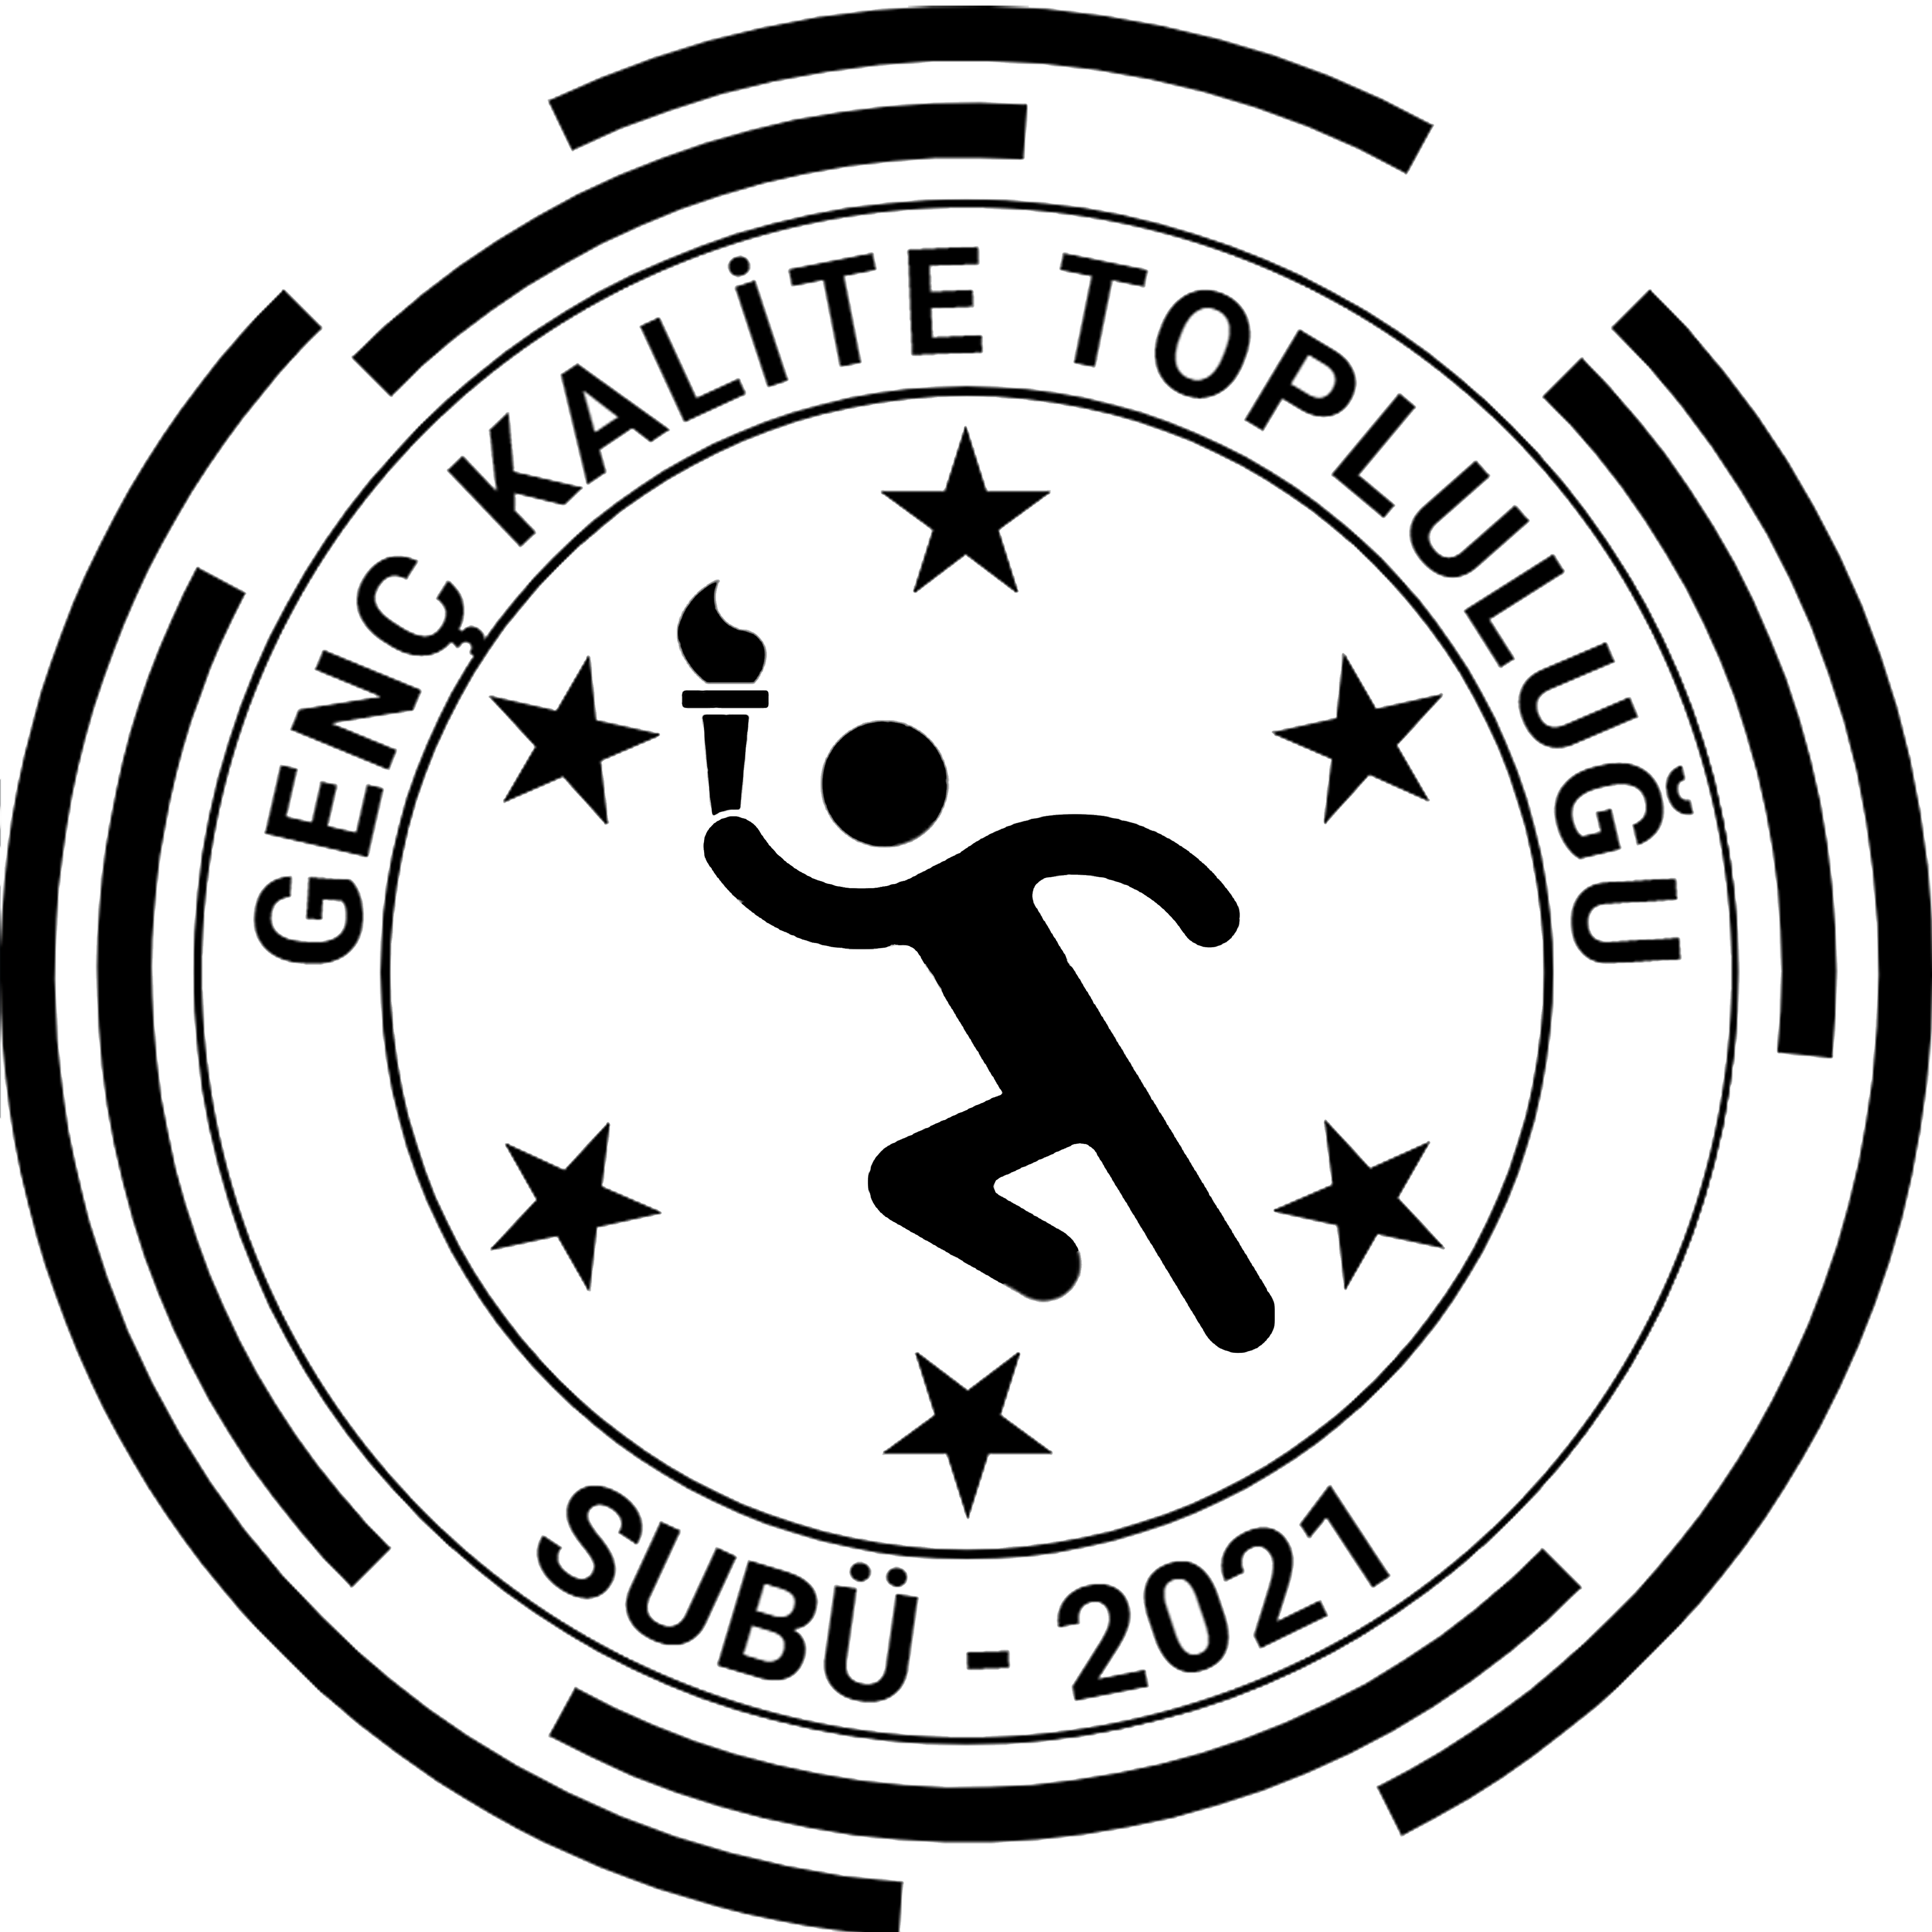 SUBÜ Genç Kalite Topluluğu Logosu